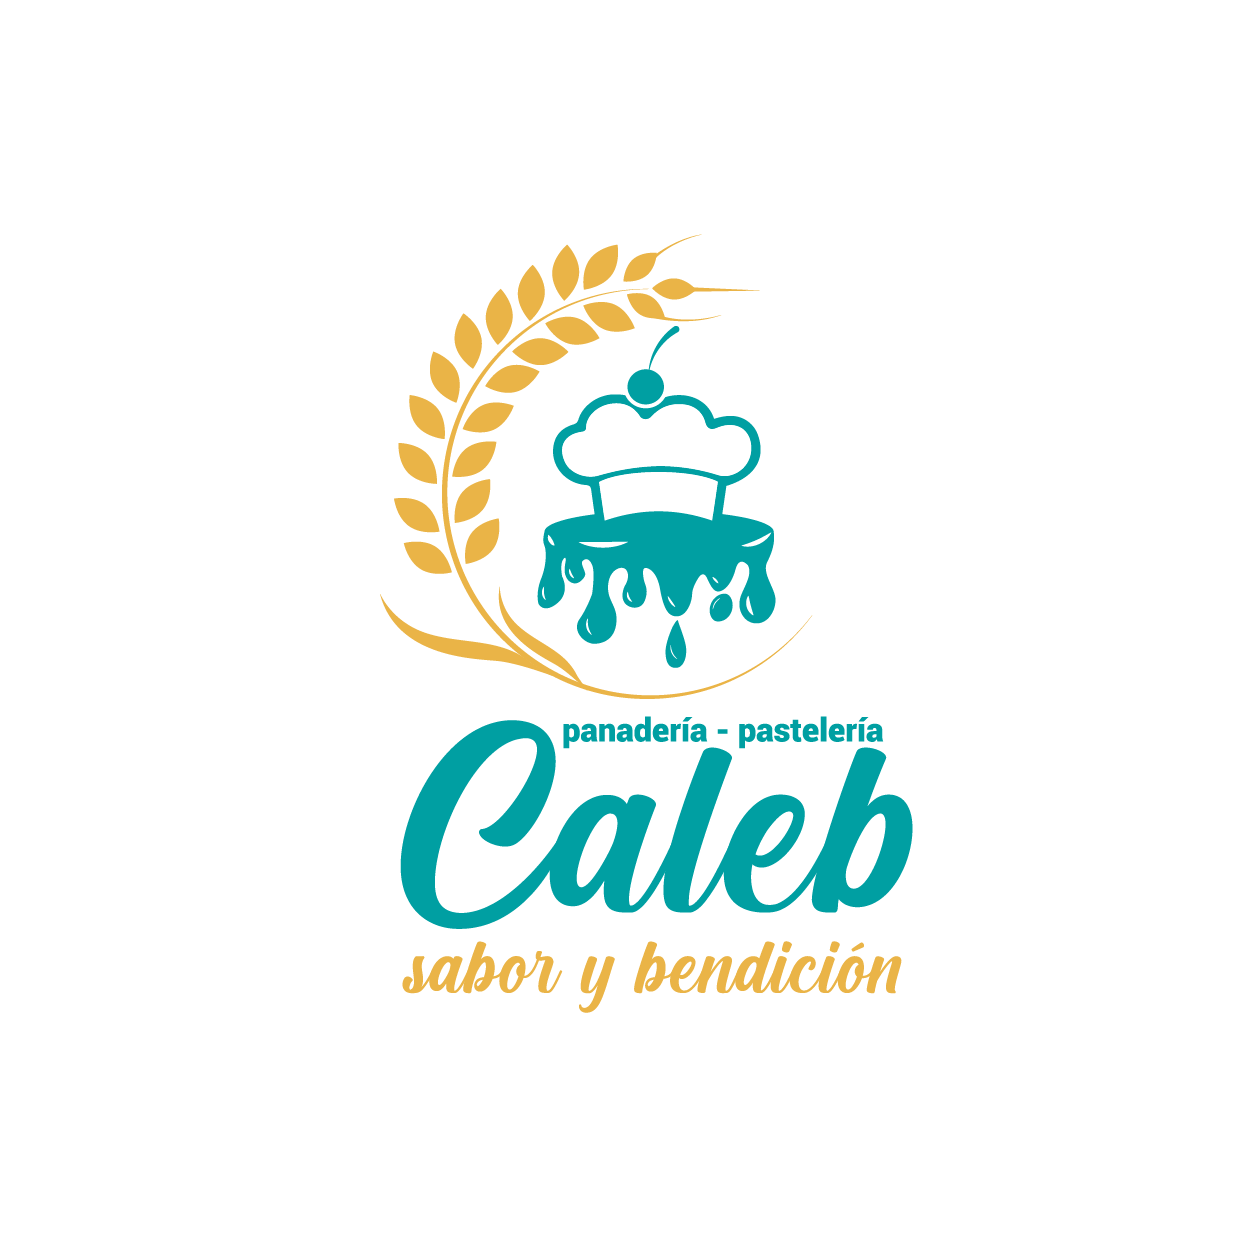 Diseño de Logotipo: Caleb - Logos Peru - Diseño de Logos - Agencia de diseño de Logos - Nombres para Restaurantes Peruanos - logos de constructoras - logo de empresas constructoras - diseño de logotipos en lima